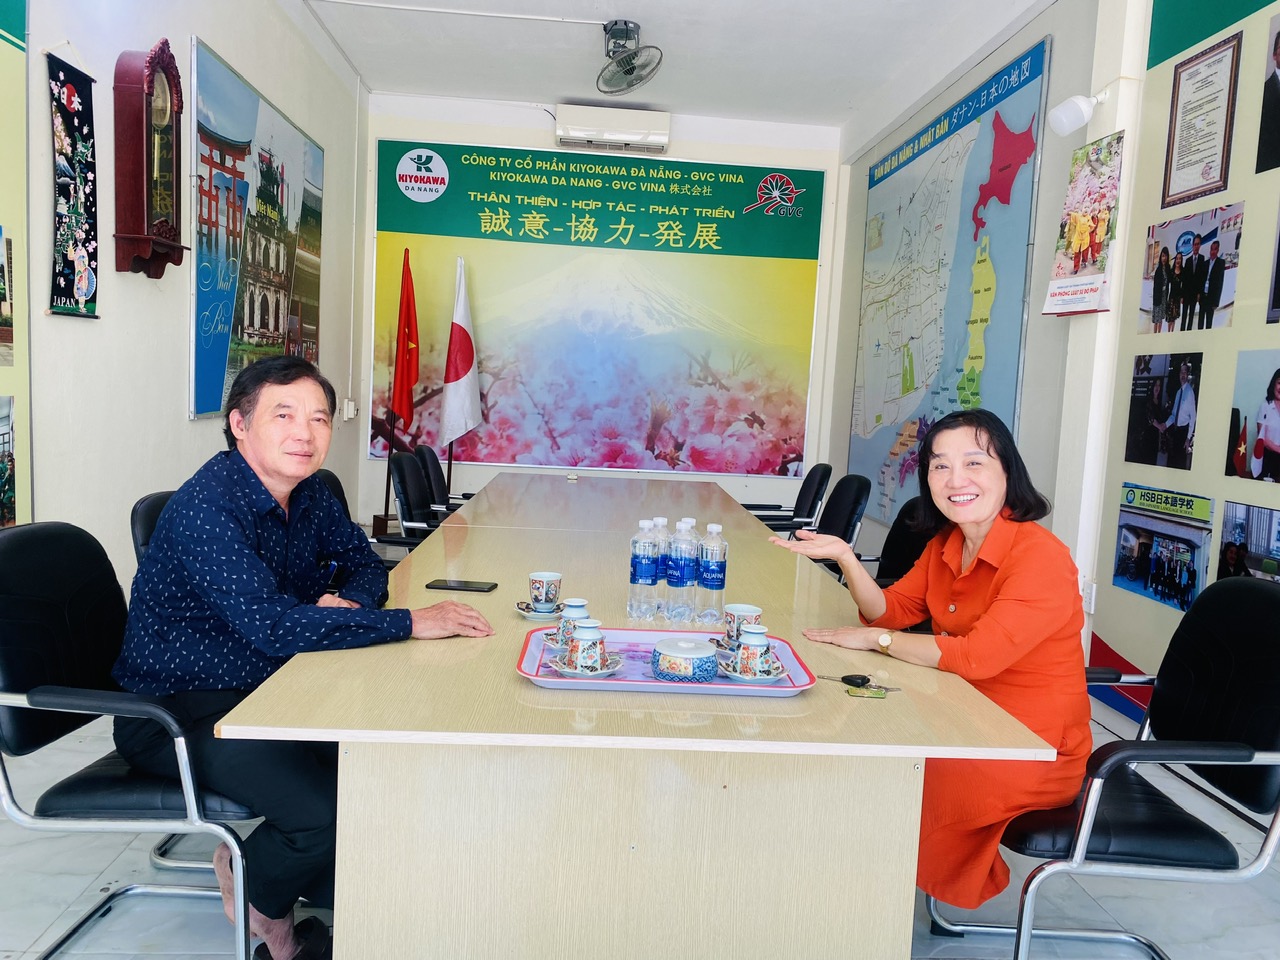 Trưởng phòng lao động TBXH huyện Đông Giang về thị sát và làm việc với công ty KIYOKAWA ĐÀ NẴNG – GVC VINA